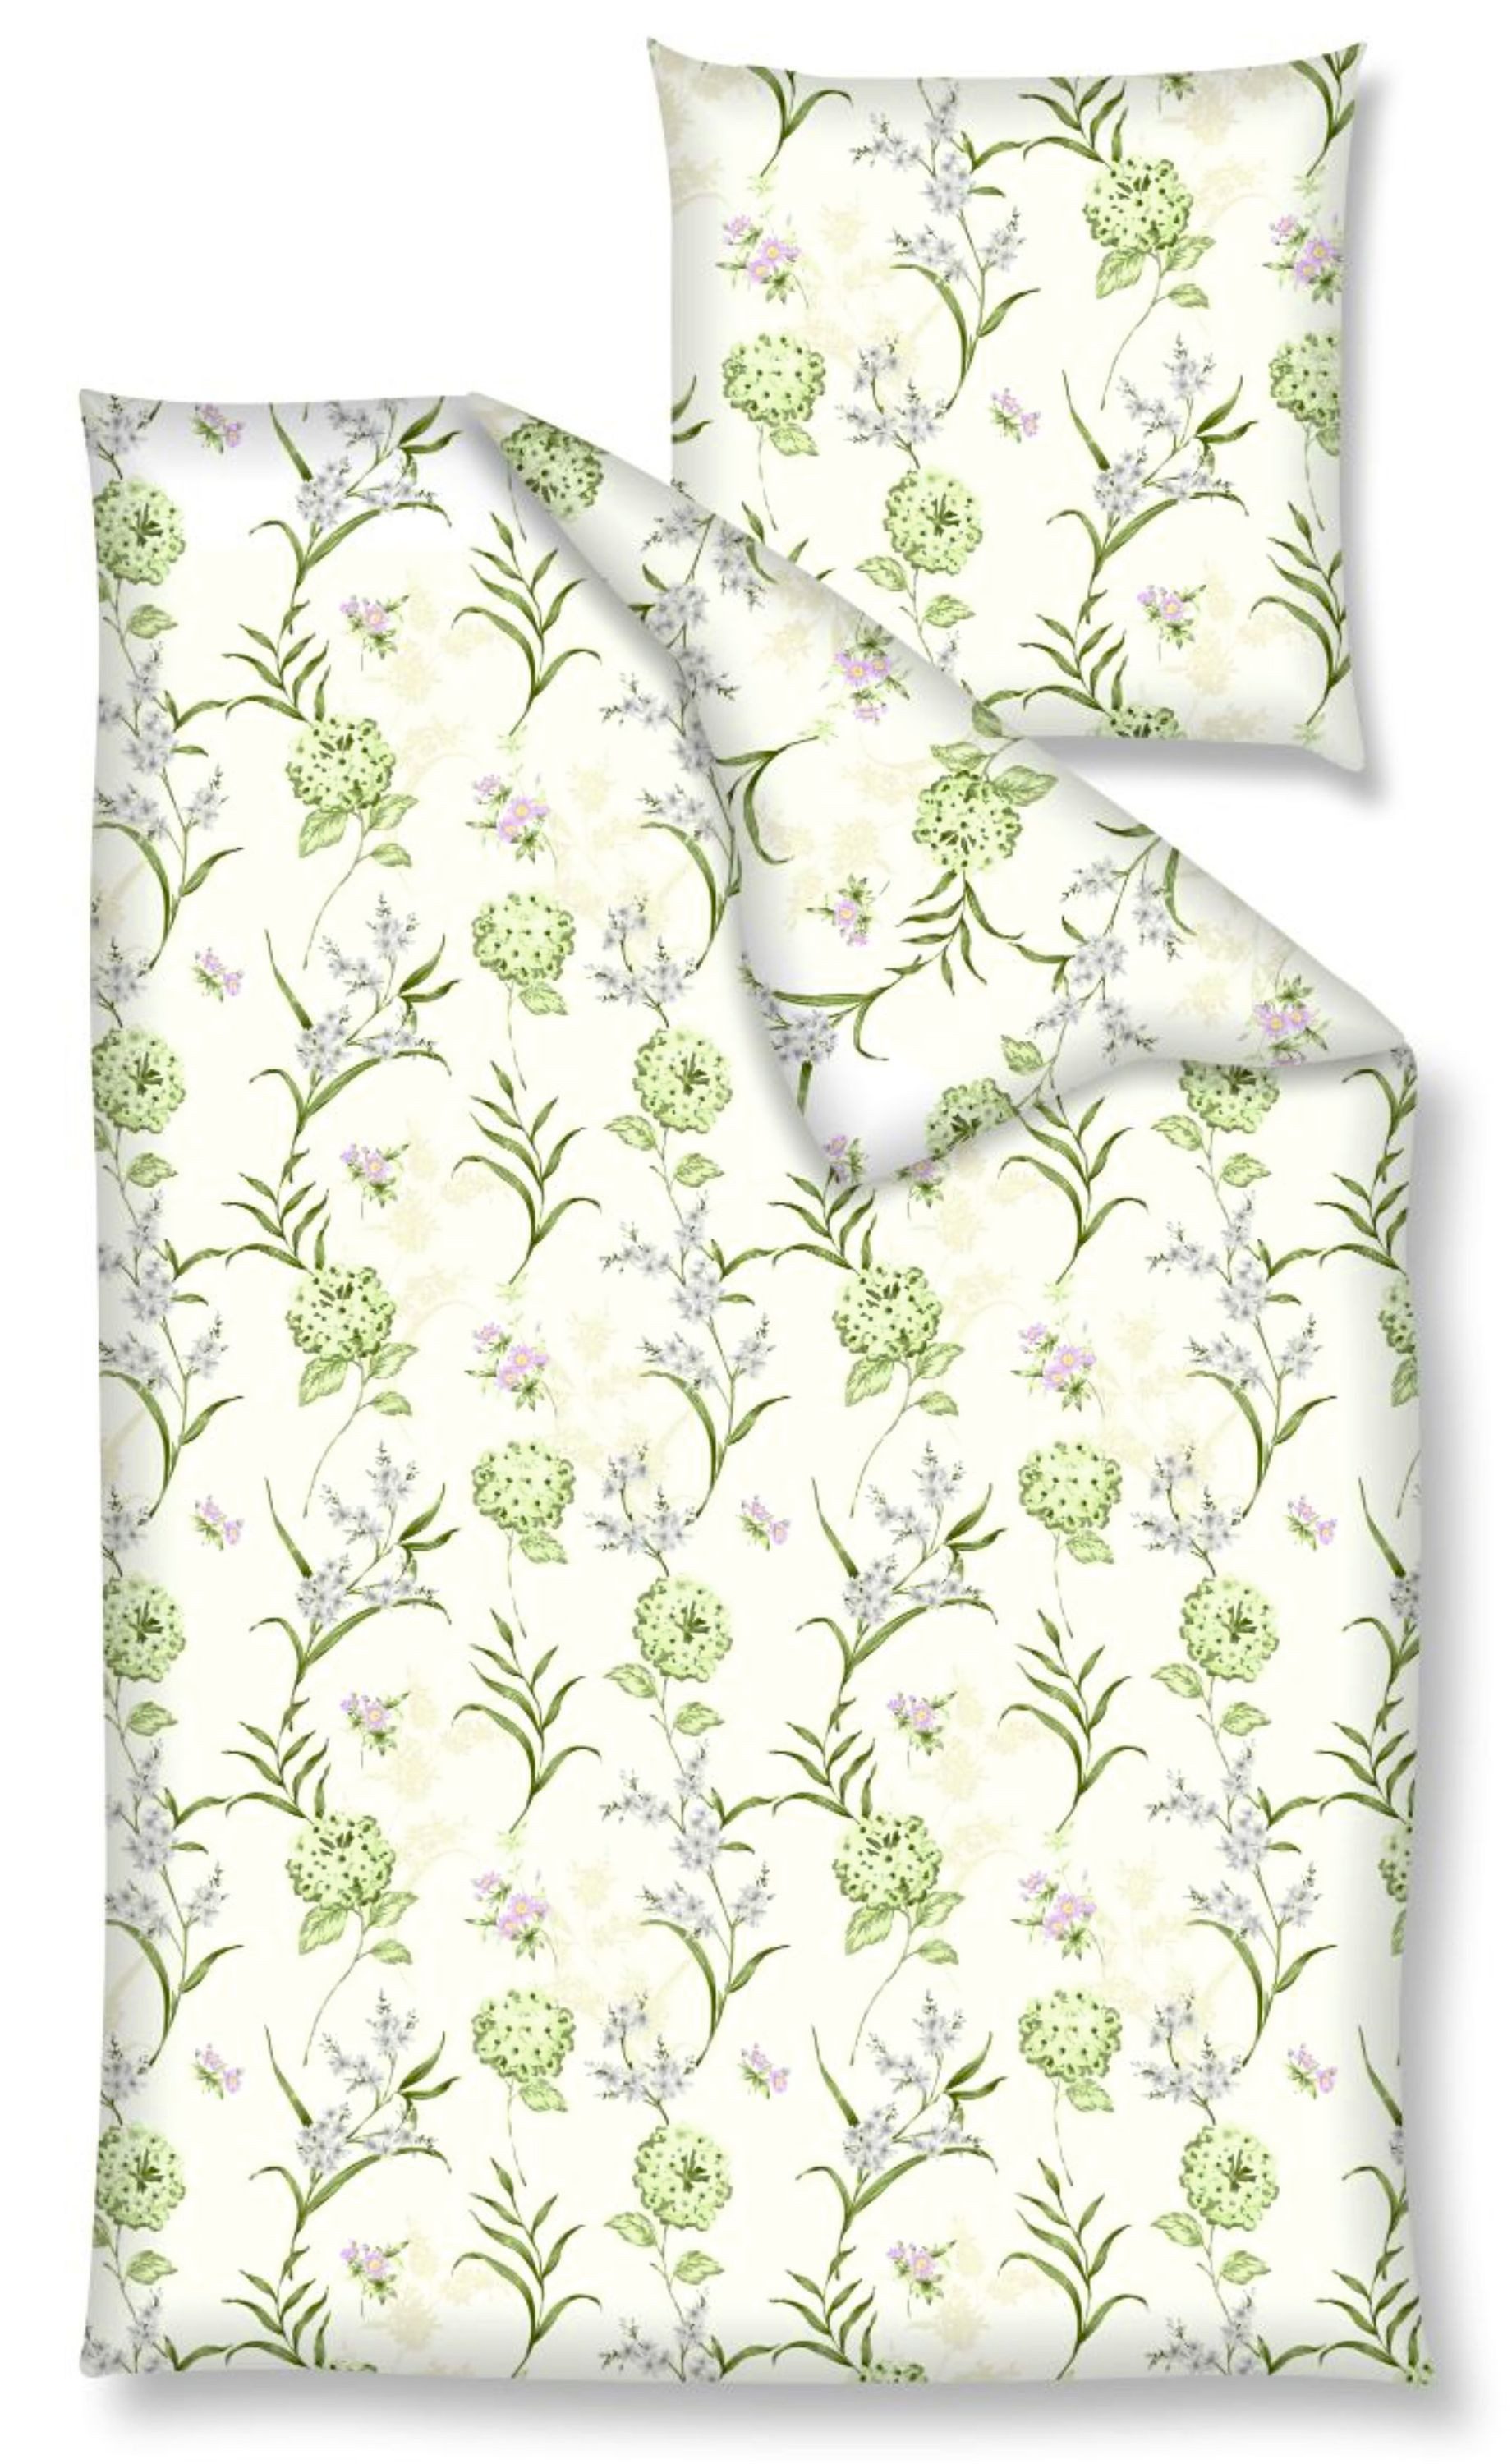 Bettwäsche Baumwolle, Nanette, Renforcé, 2 teilig, Blumenwiese, grün, weißer Hintergrund